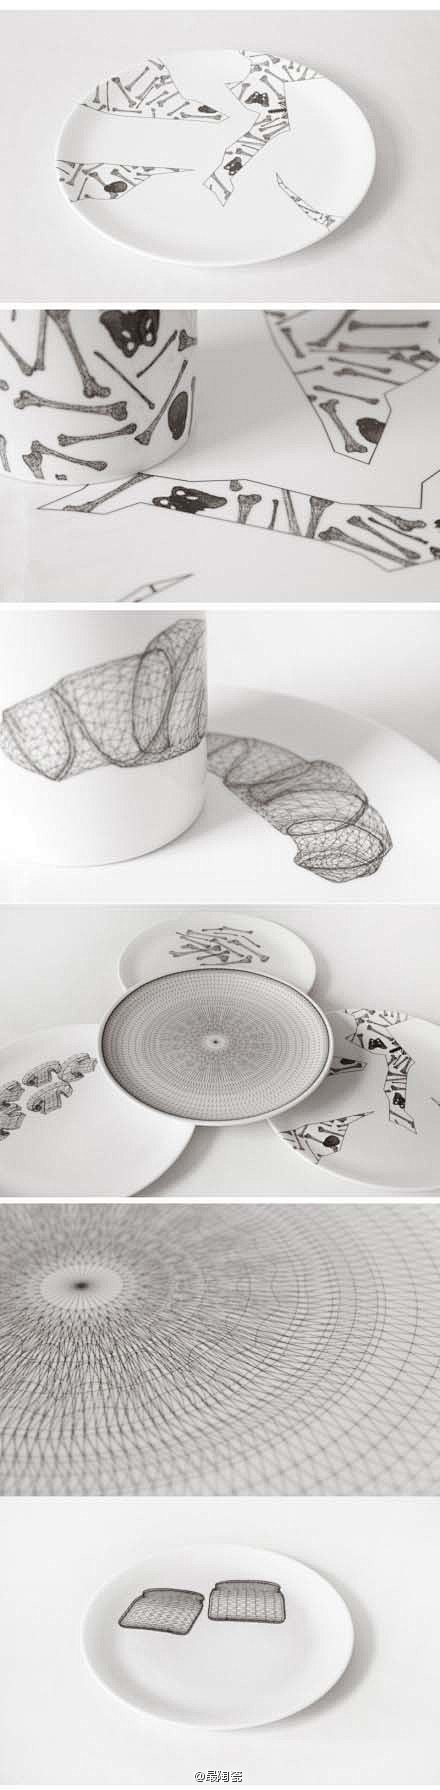 丝网印瓷器餐具